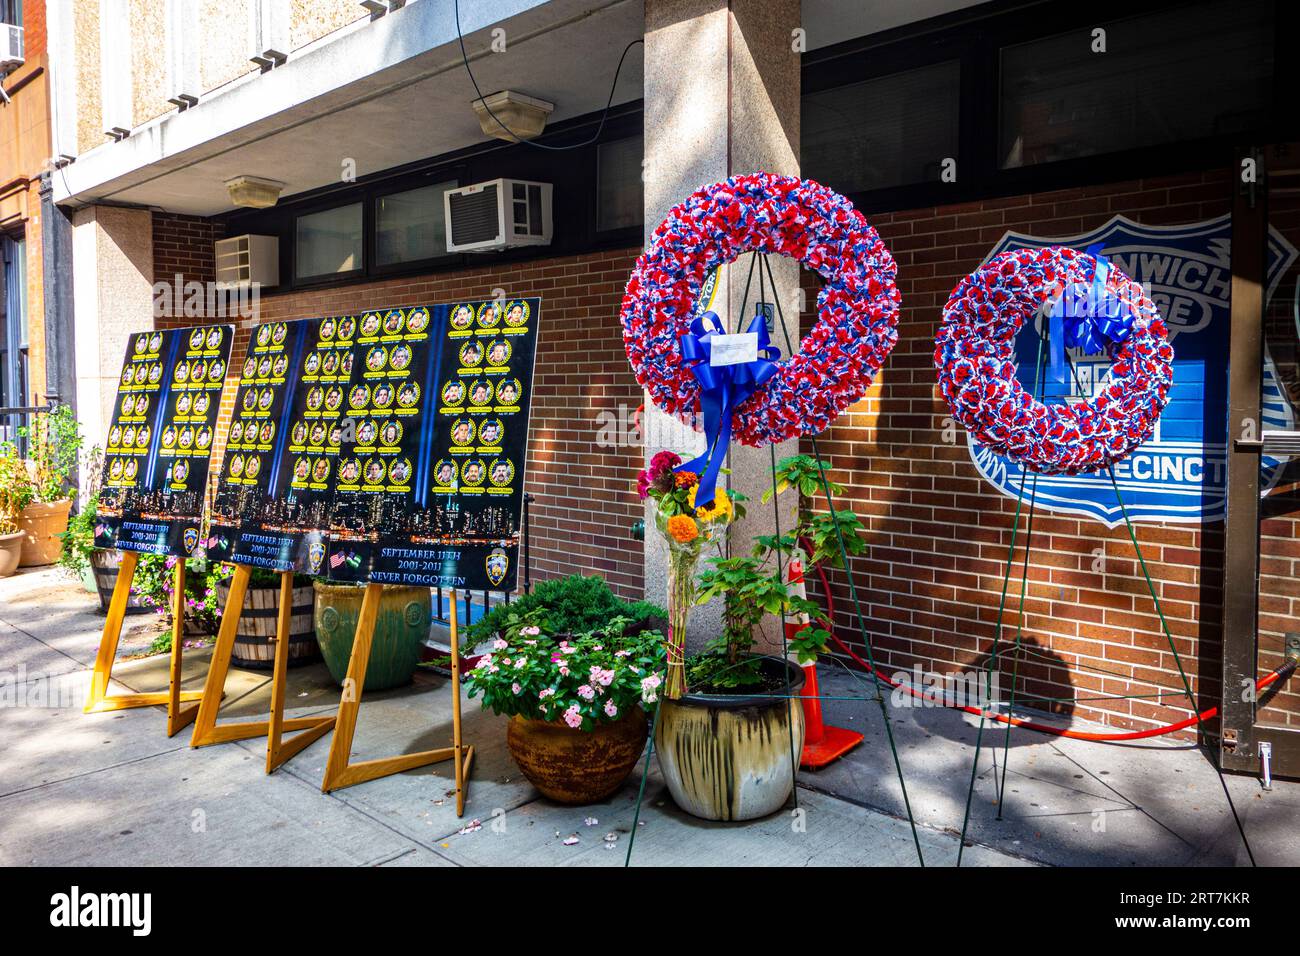 Souvenir de 9/11 au poste de la 6e circonscription avec des couronnes et la liste des policiers perdus le 11 septembre 2001, 10th St. Greenwich Village, New York Banque D'Images